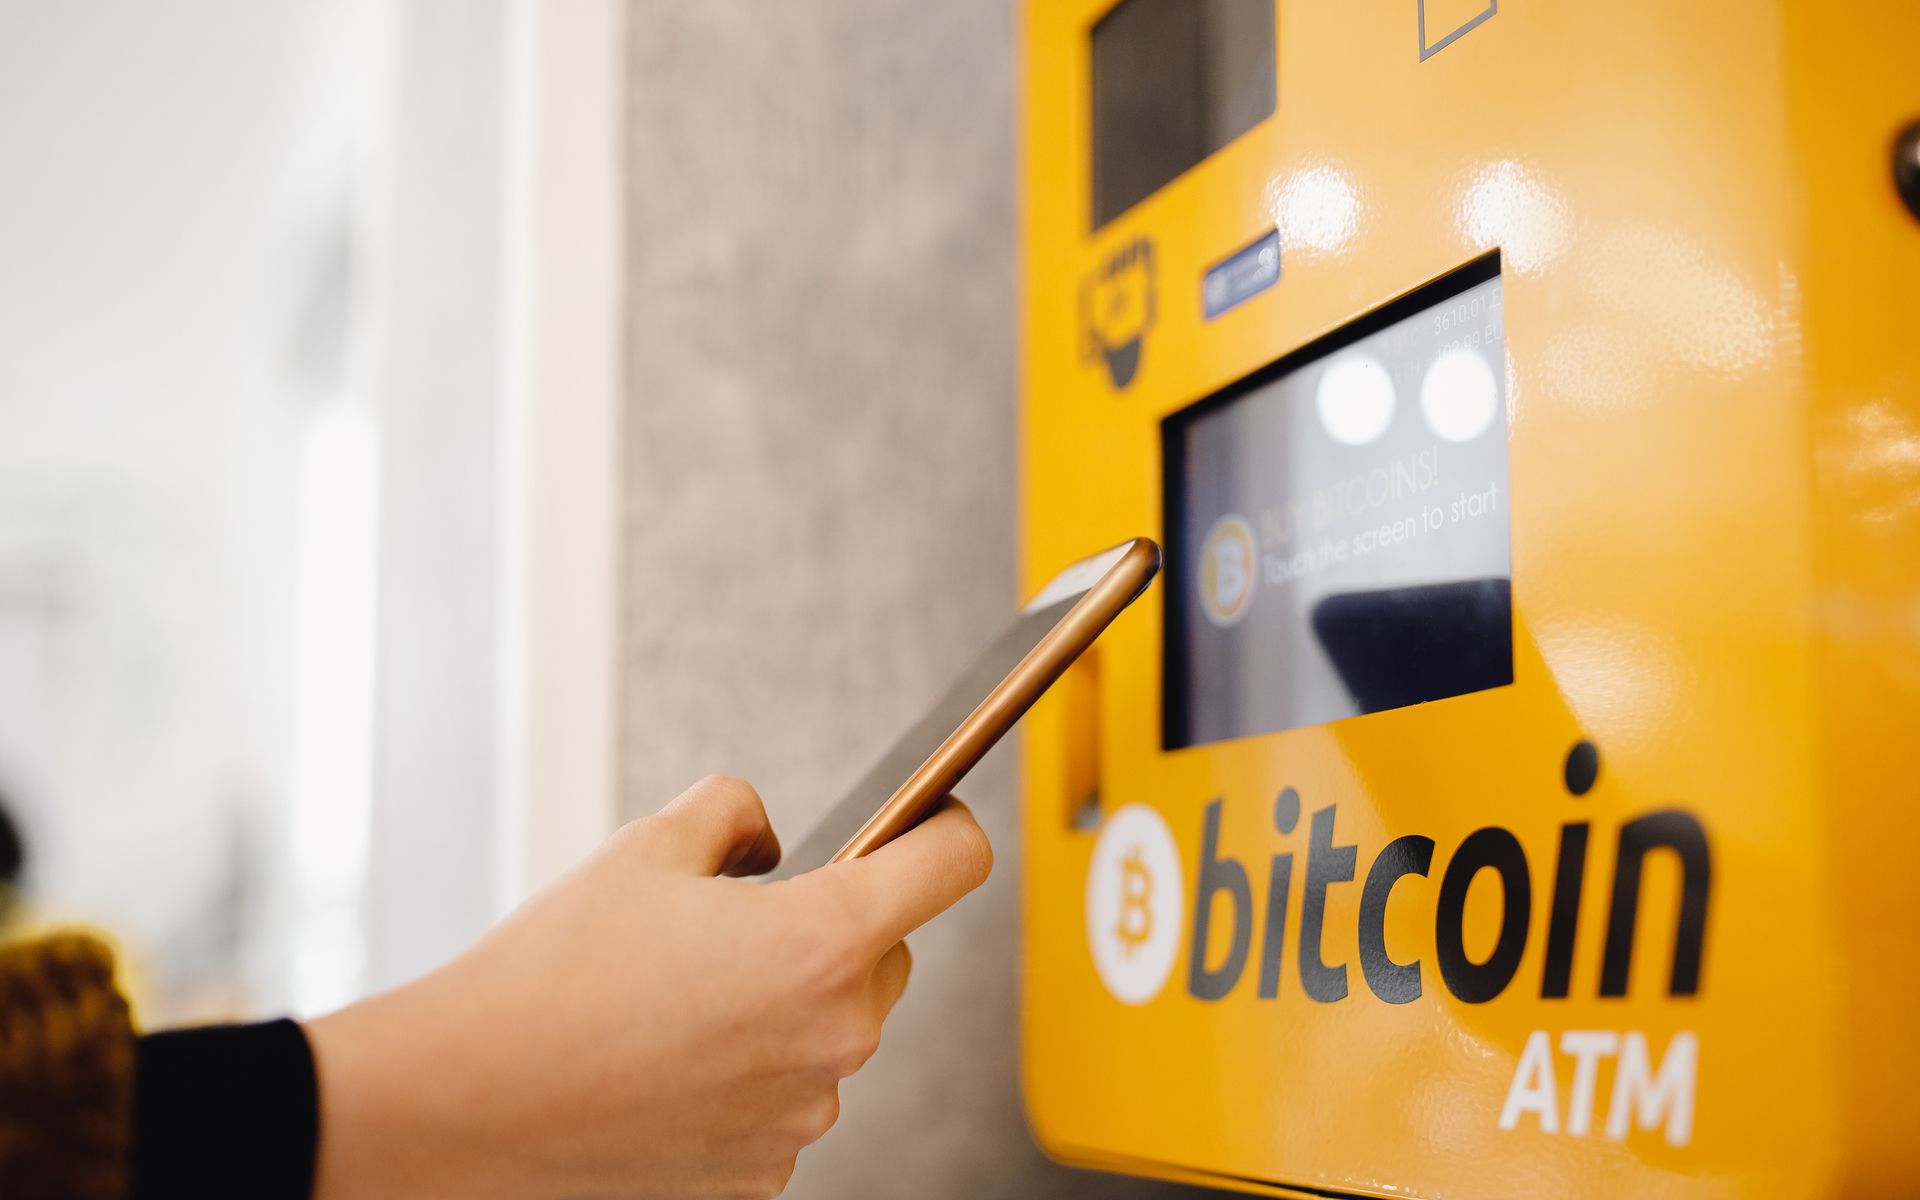 Bitcoin ATM vicino Almería ~ Bitcoin Accettato Qui Almería | prosuasa.it